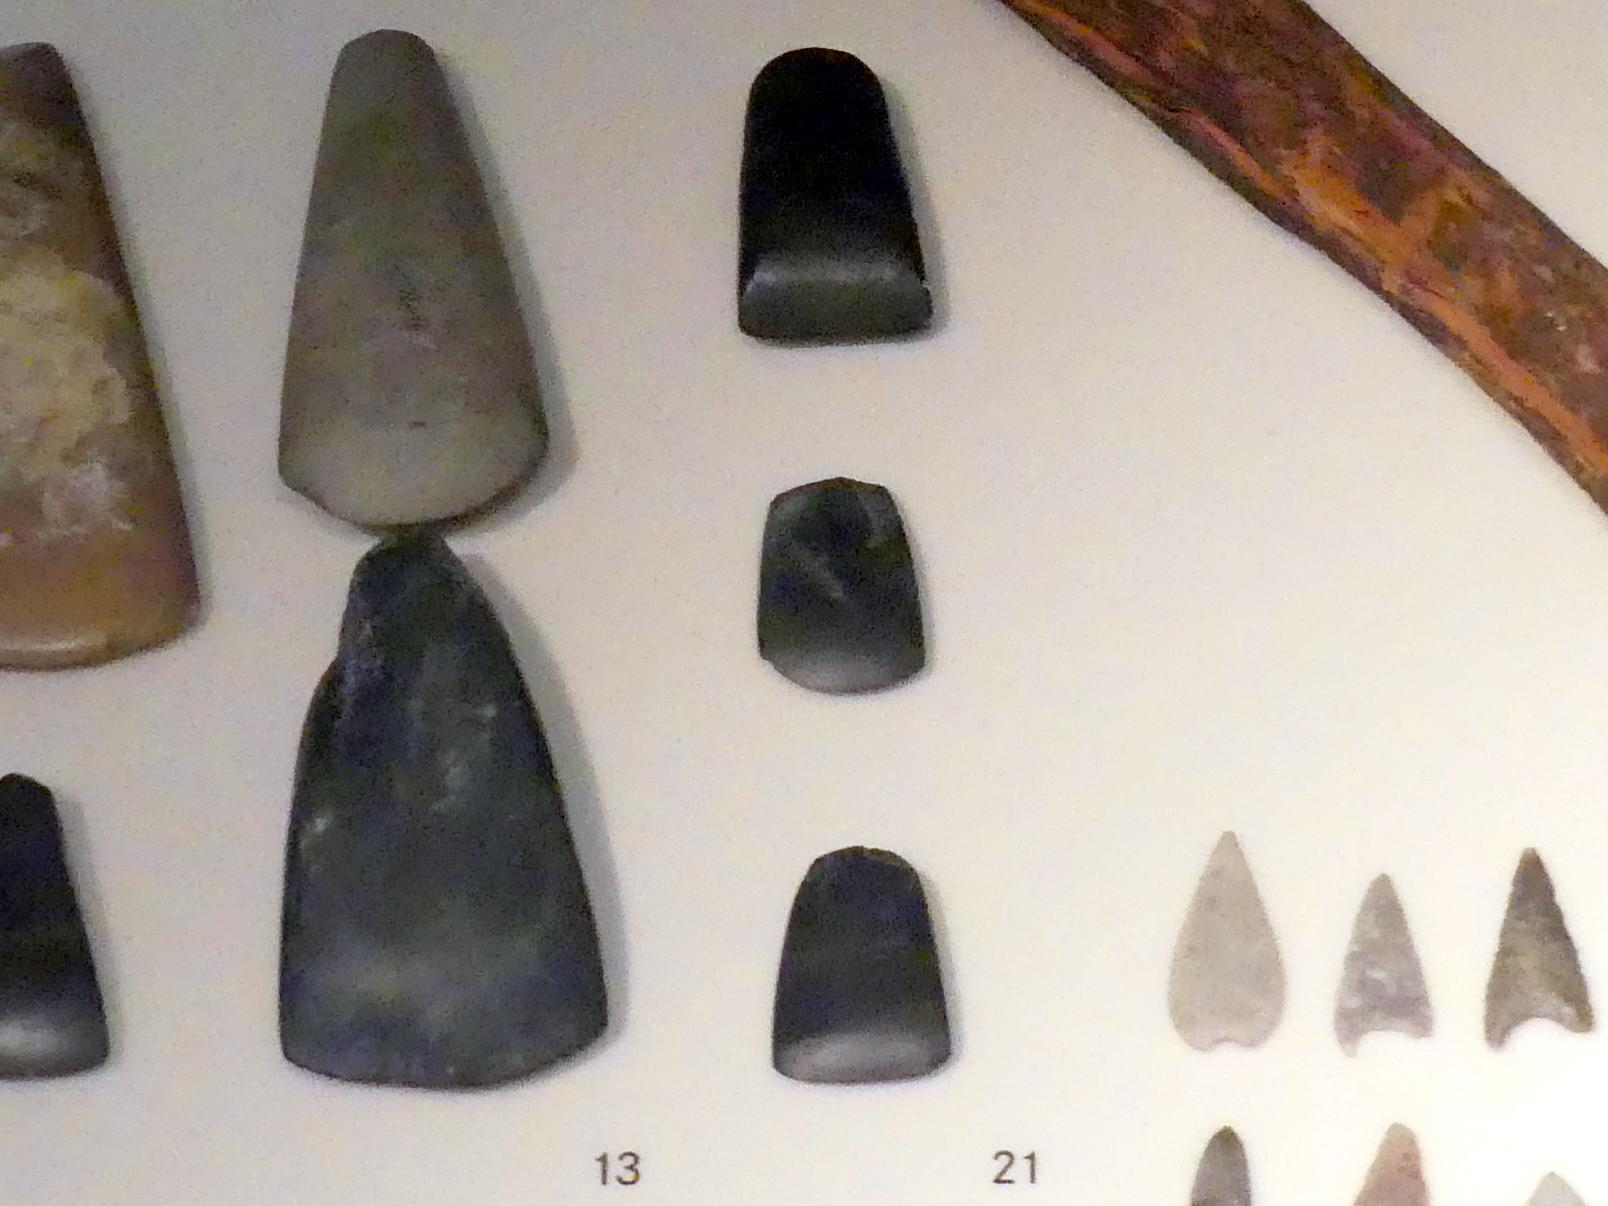 Kleine Beile, Jungneolithikum, 4400 - 3500 v. Chr., Spätneolithikum, Undatiert, 4400 - 2800 v. Chr.